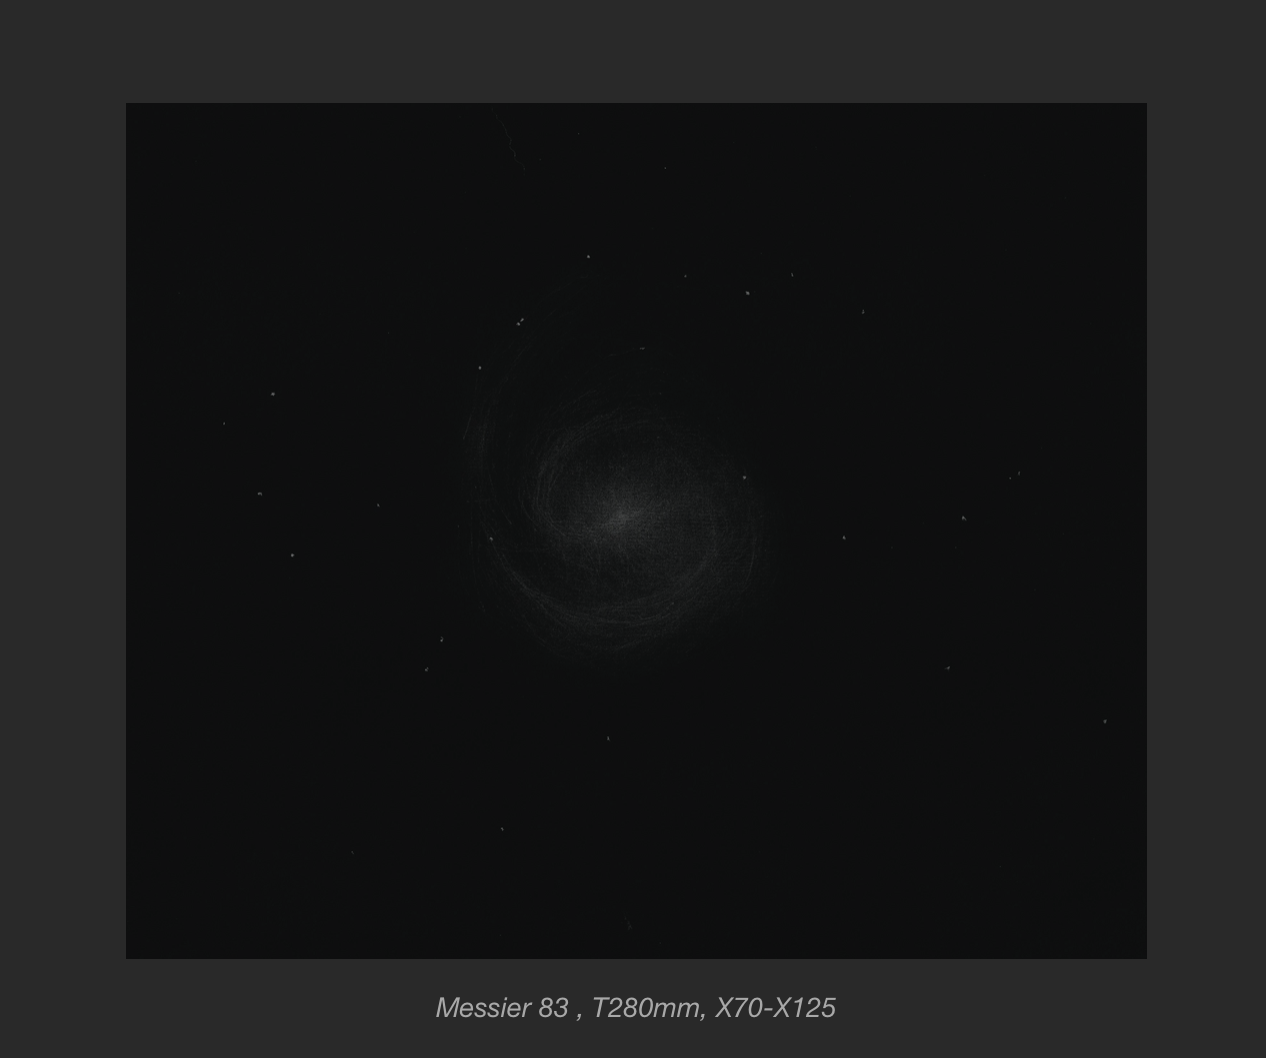 5e7898621f52c_Messier83auT280mm.png.66d42bfa8479f9f0d73695858095ef25.png